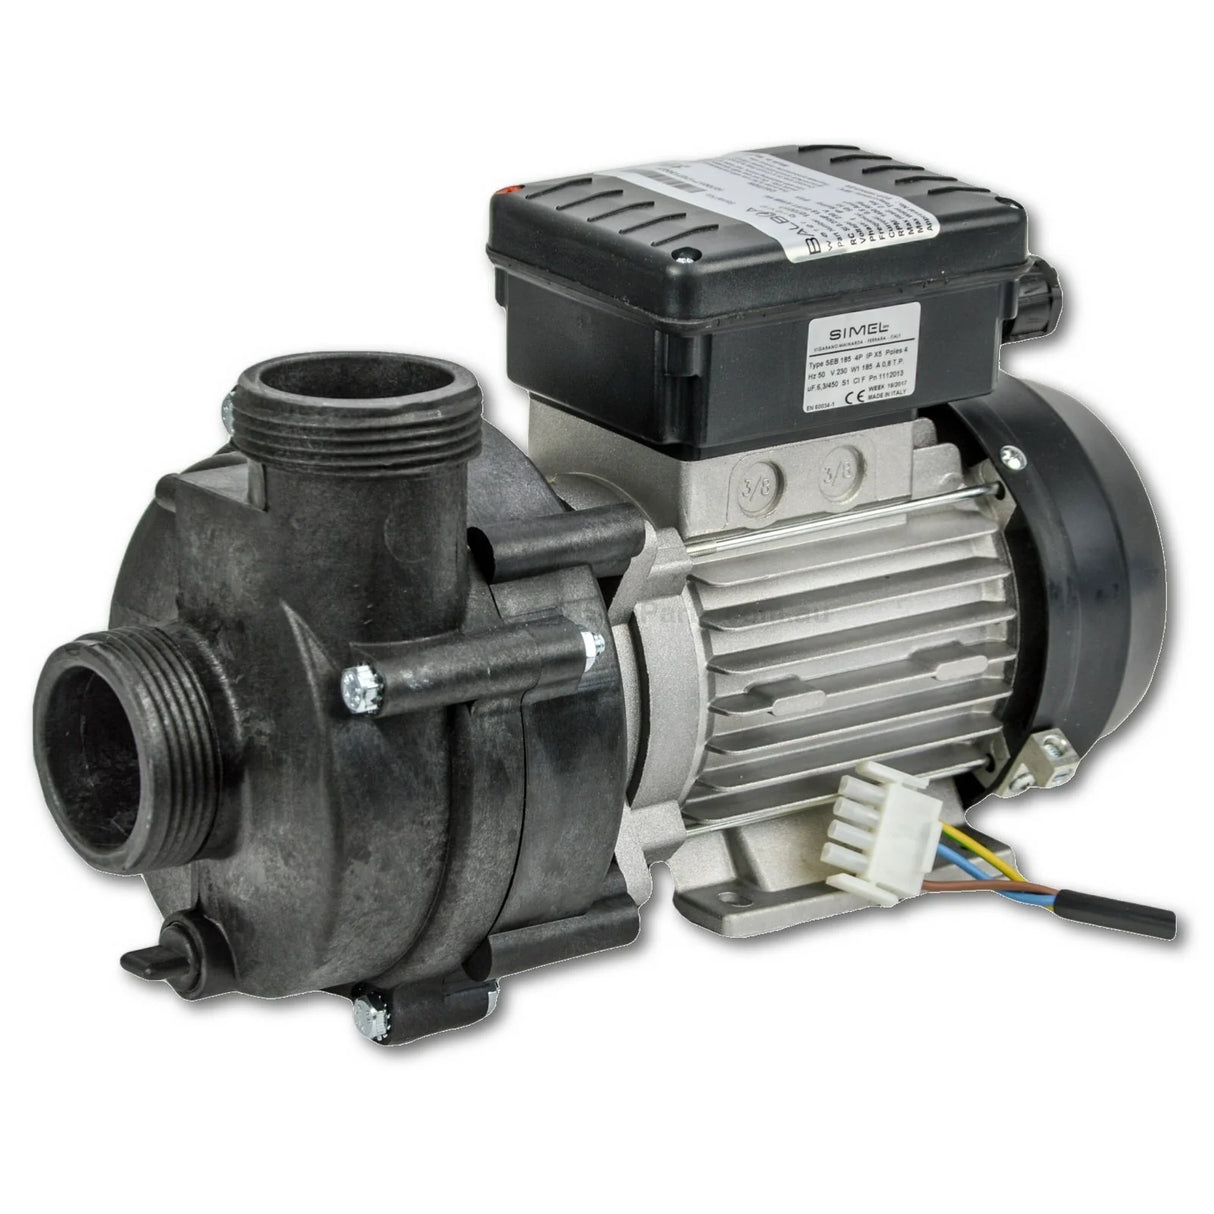 Balboa Spa Circulation Pump - 1030017 / 1070017 - 0.25HP - Ultima - Heater and Spa Parts